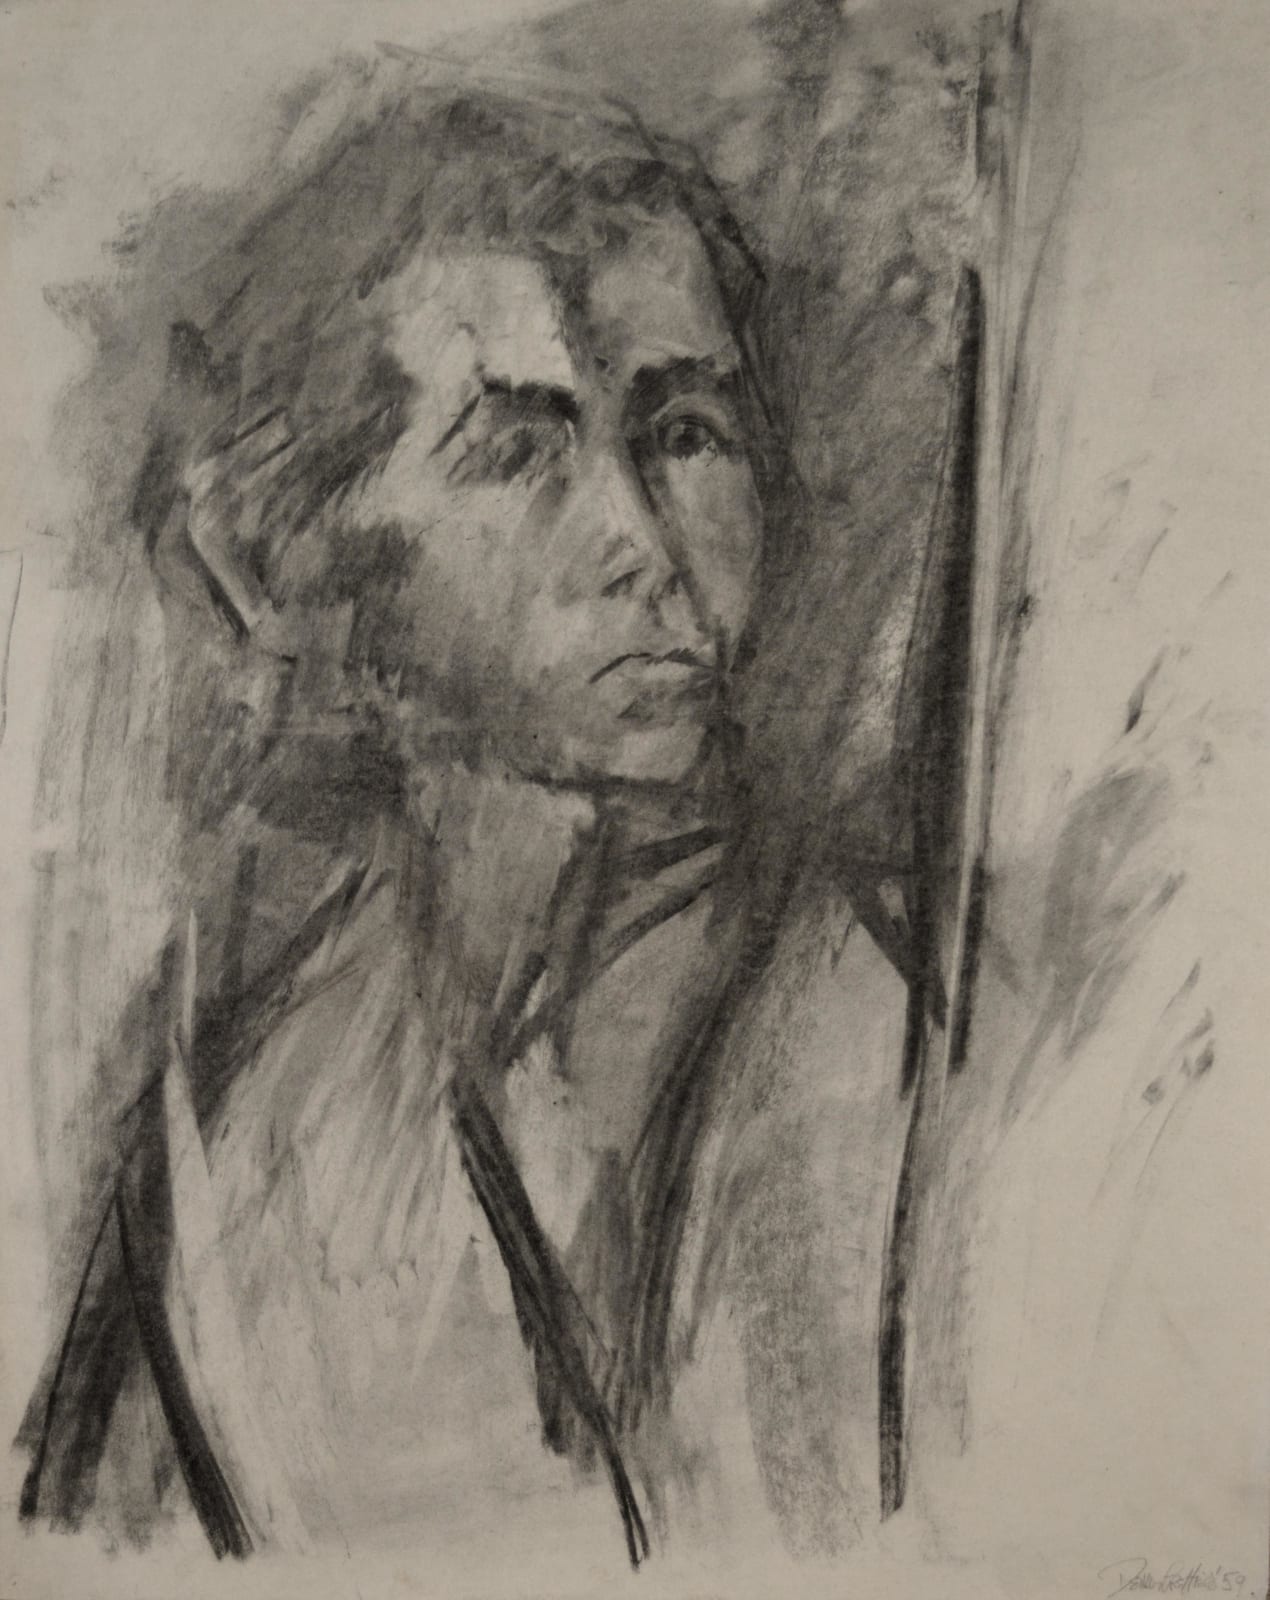 Dennis Creffield, Self Portrait, 1959